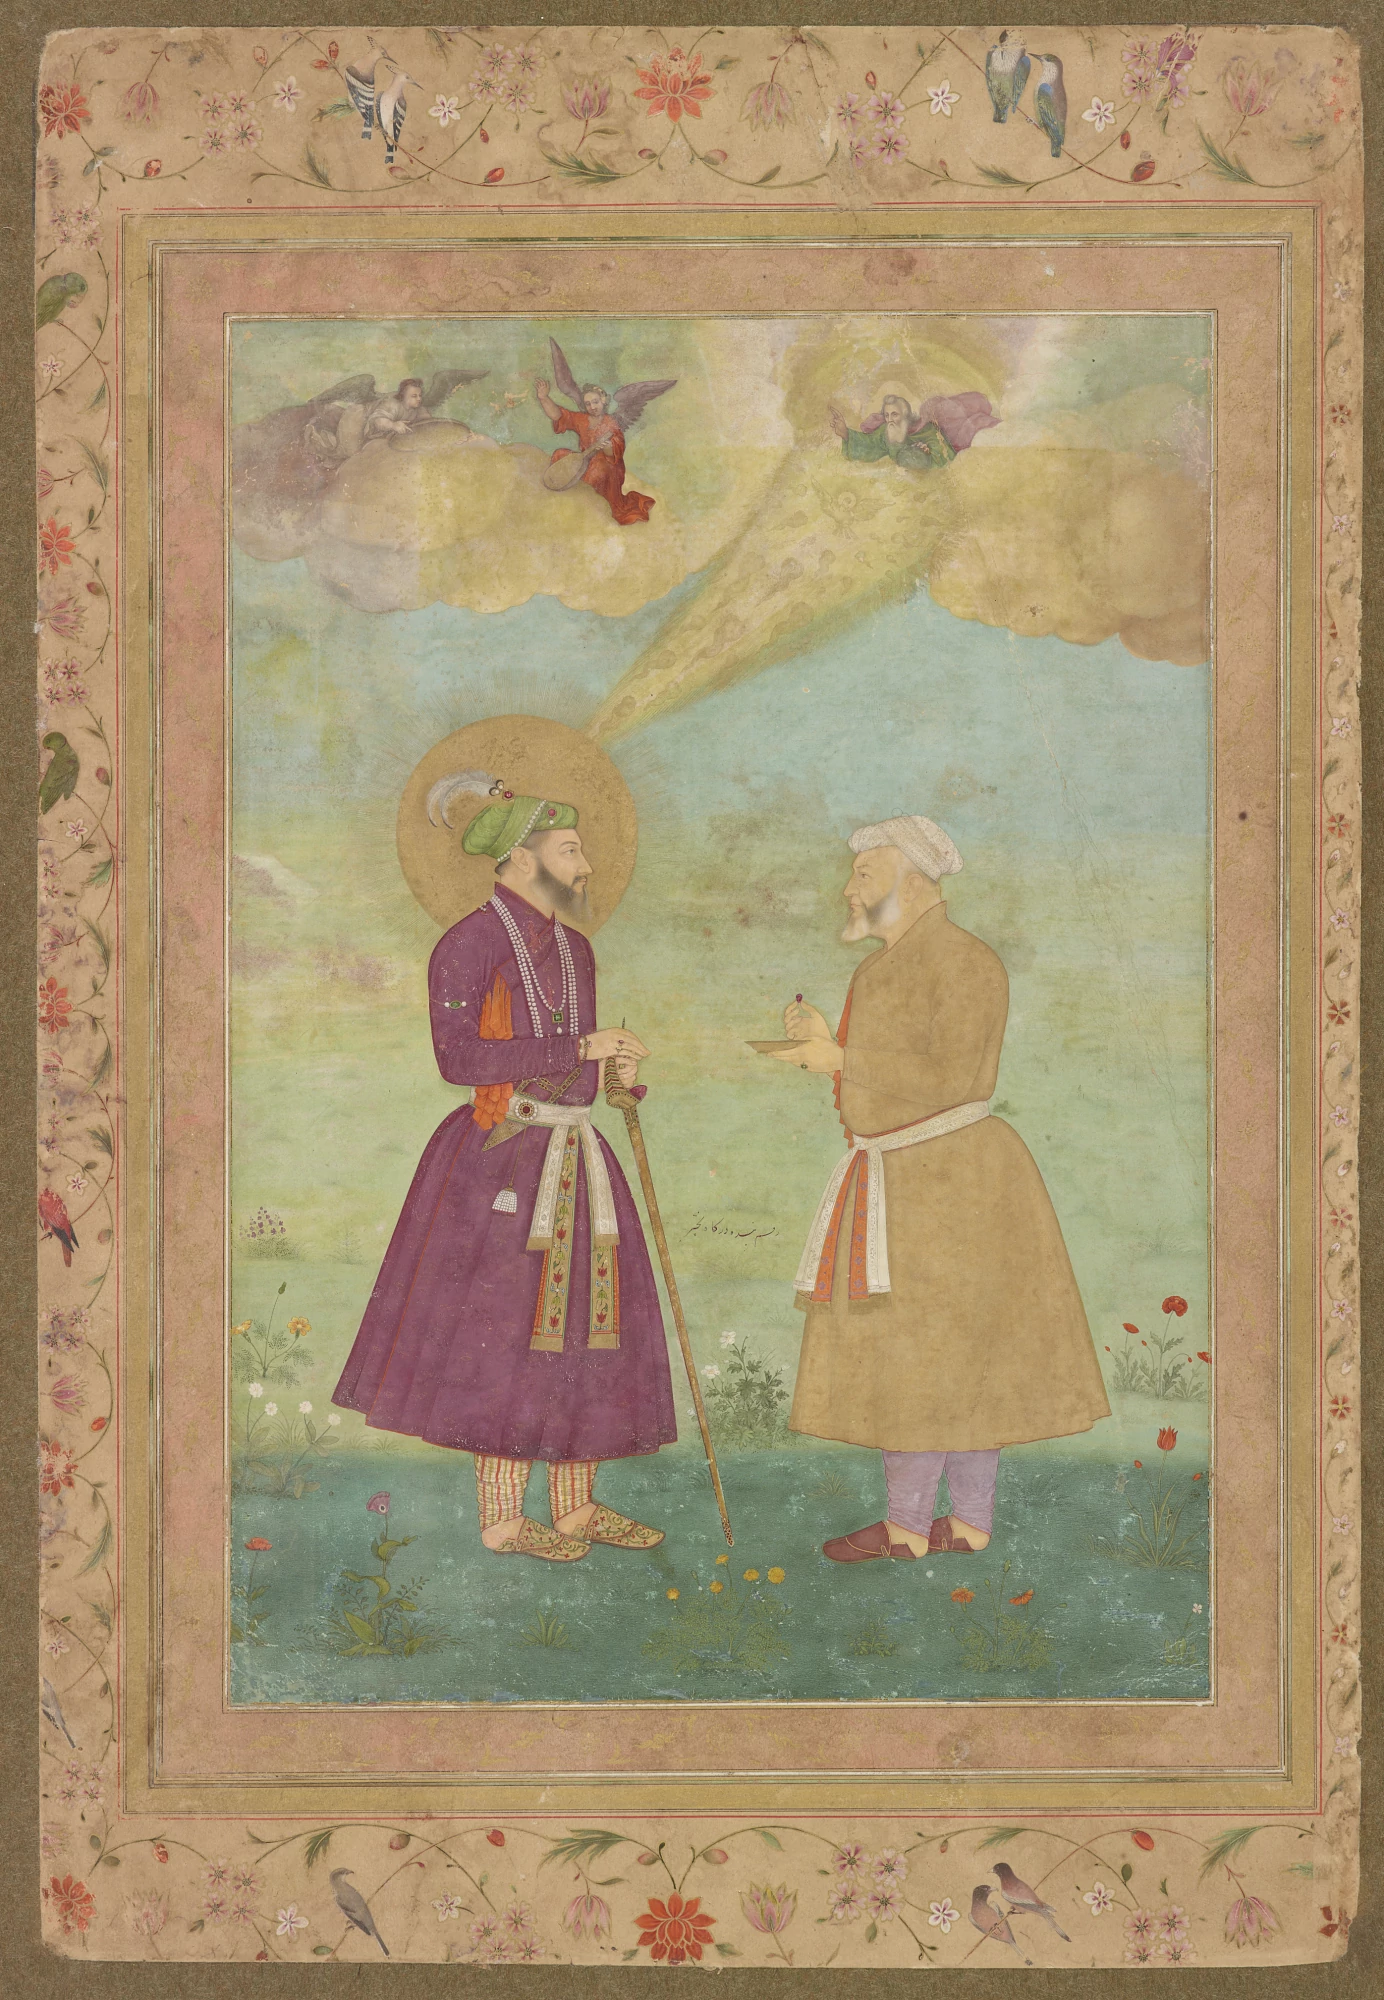 Shah Jahan with Asaf Khan, Bichitr